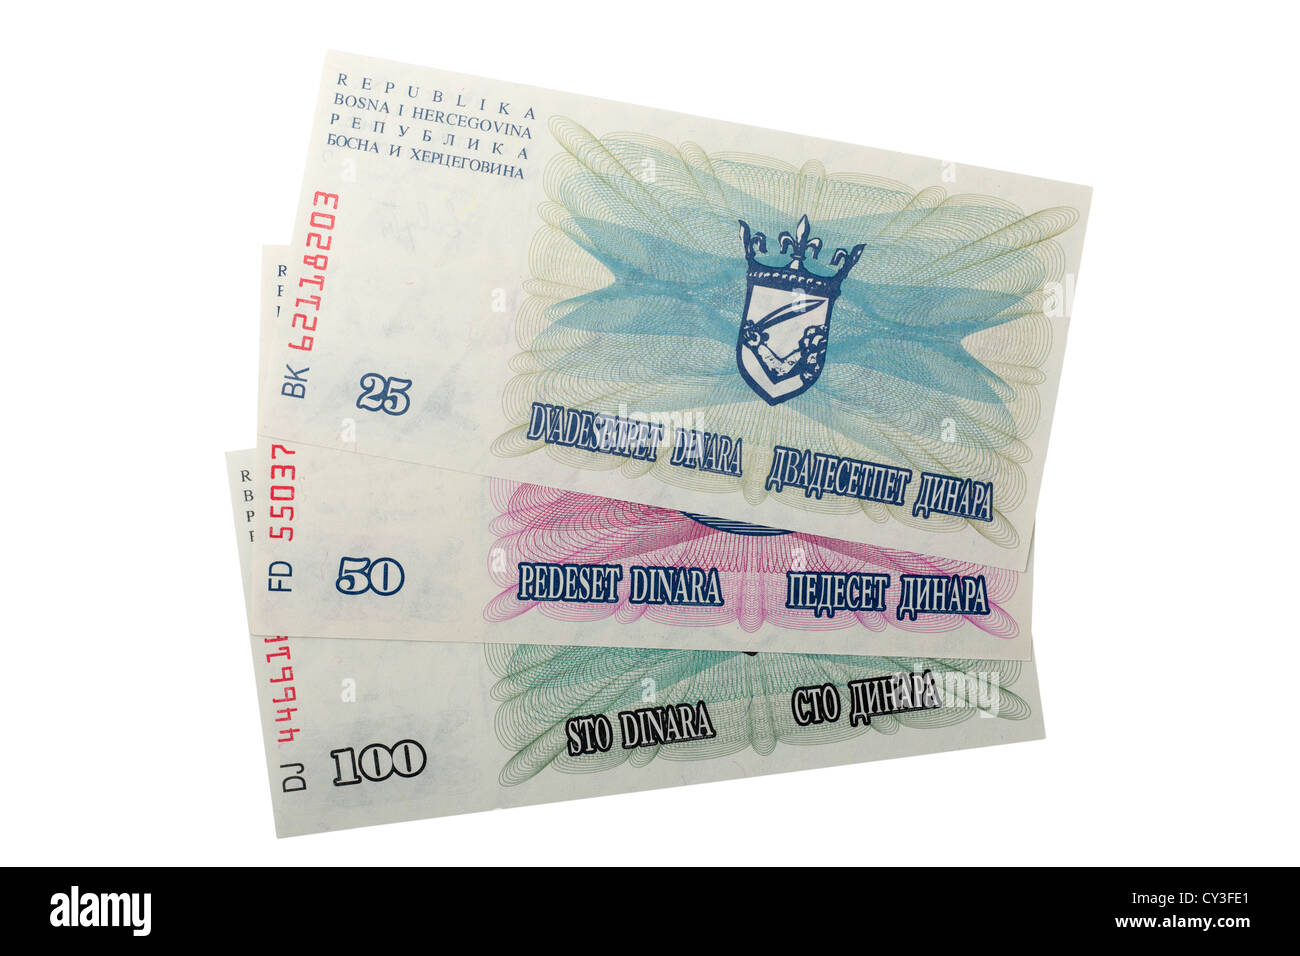 Bosnia Herzegovina 25 50 100 Dinara banknotes Stock Photo